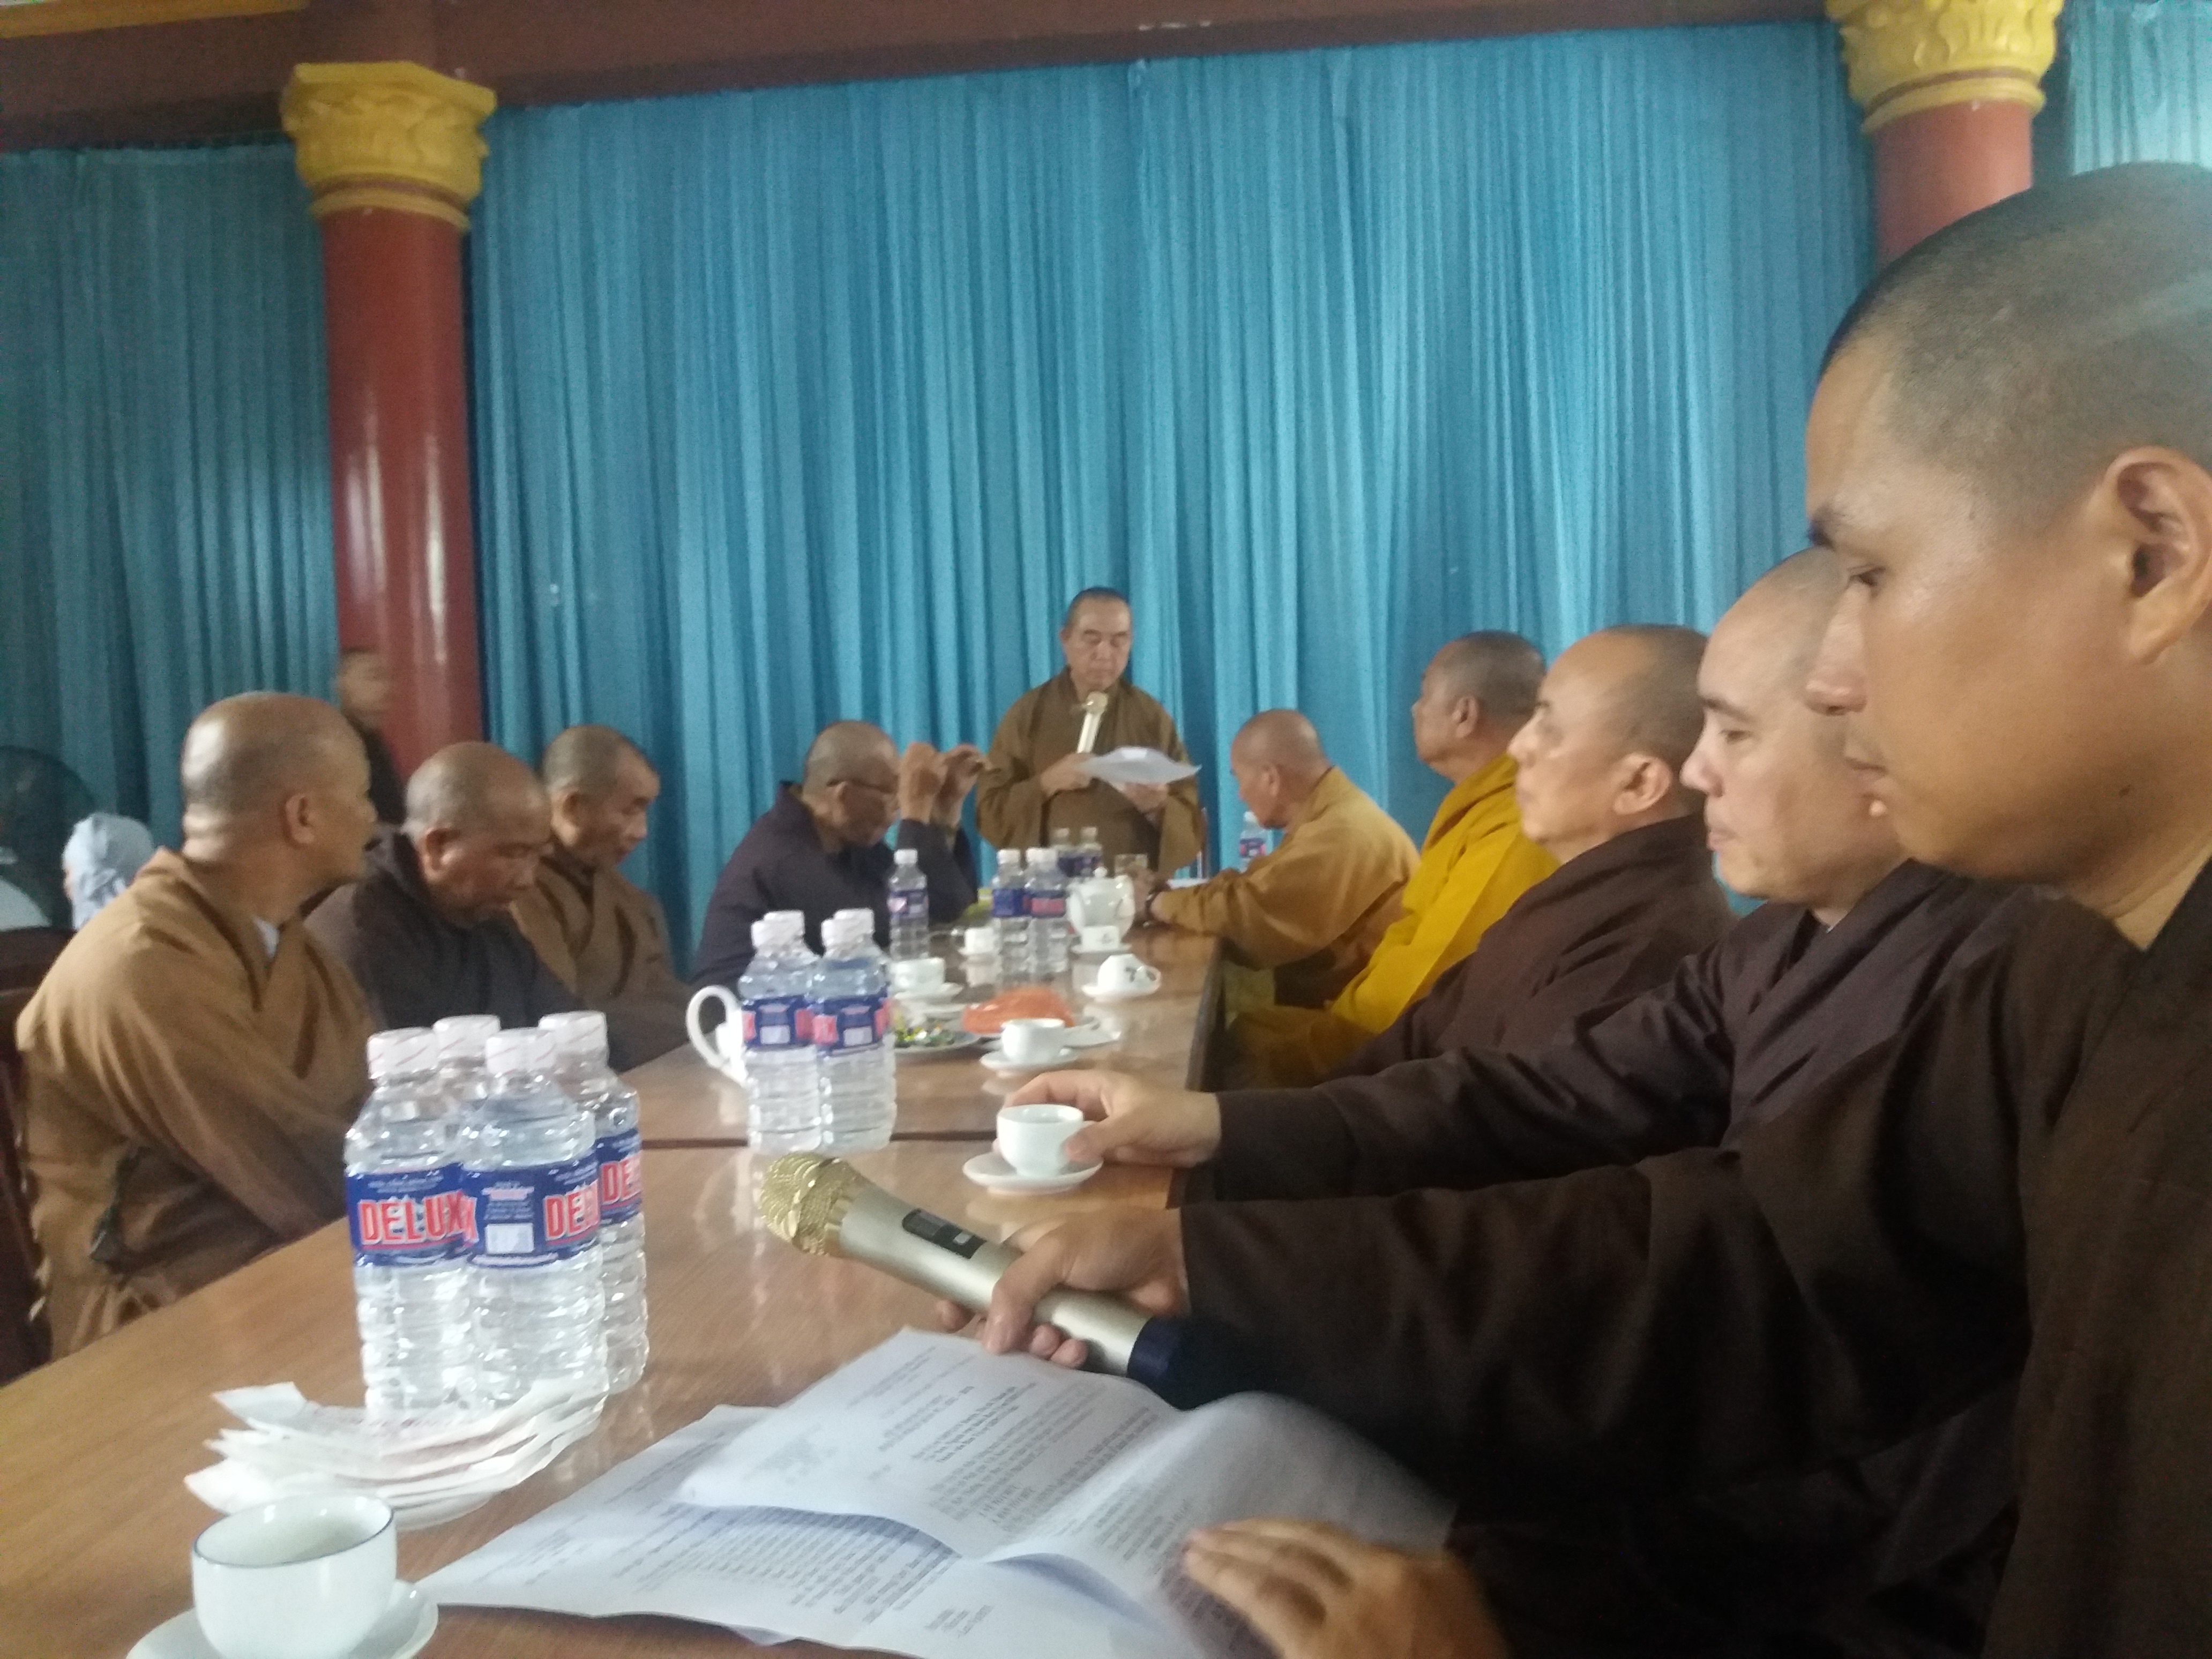 Phật giáo thị xã An Nhơn họp triển khai kế hoạch Phật đản và An cư